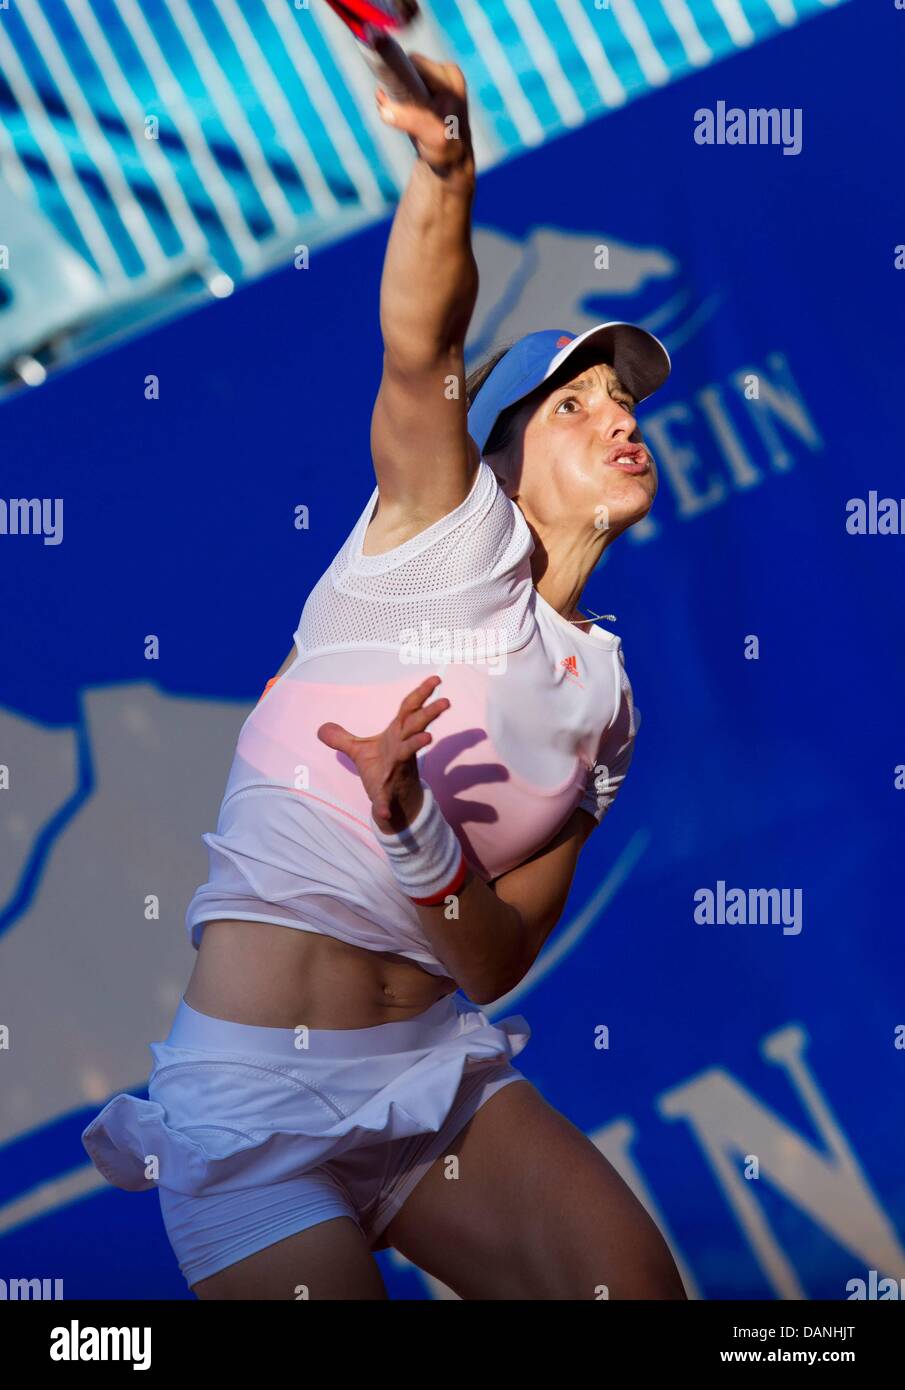 Garstein, Österreich. 16. Juli 2013. WTA Tennis Damen Tour Gastein. Bild zeigt Andrea Petkovic Ger in Runde 1 des Turniers. Bildnachweis: Action Plus Sport Bilder/Alamy Live News Stockfoto